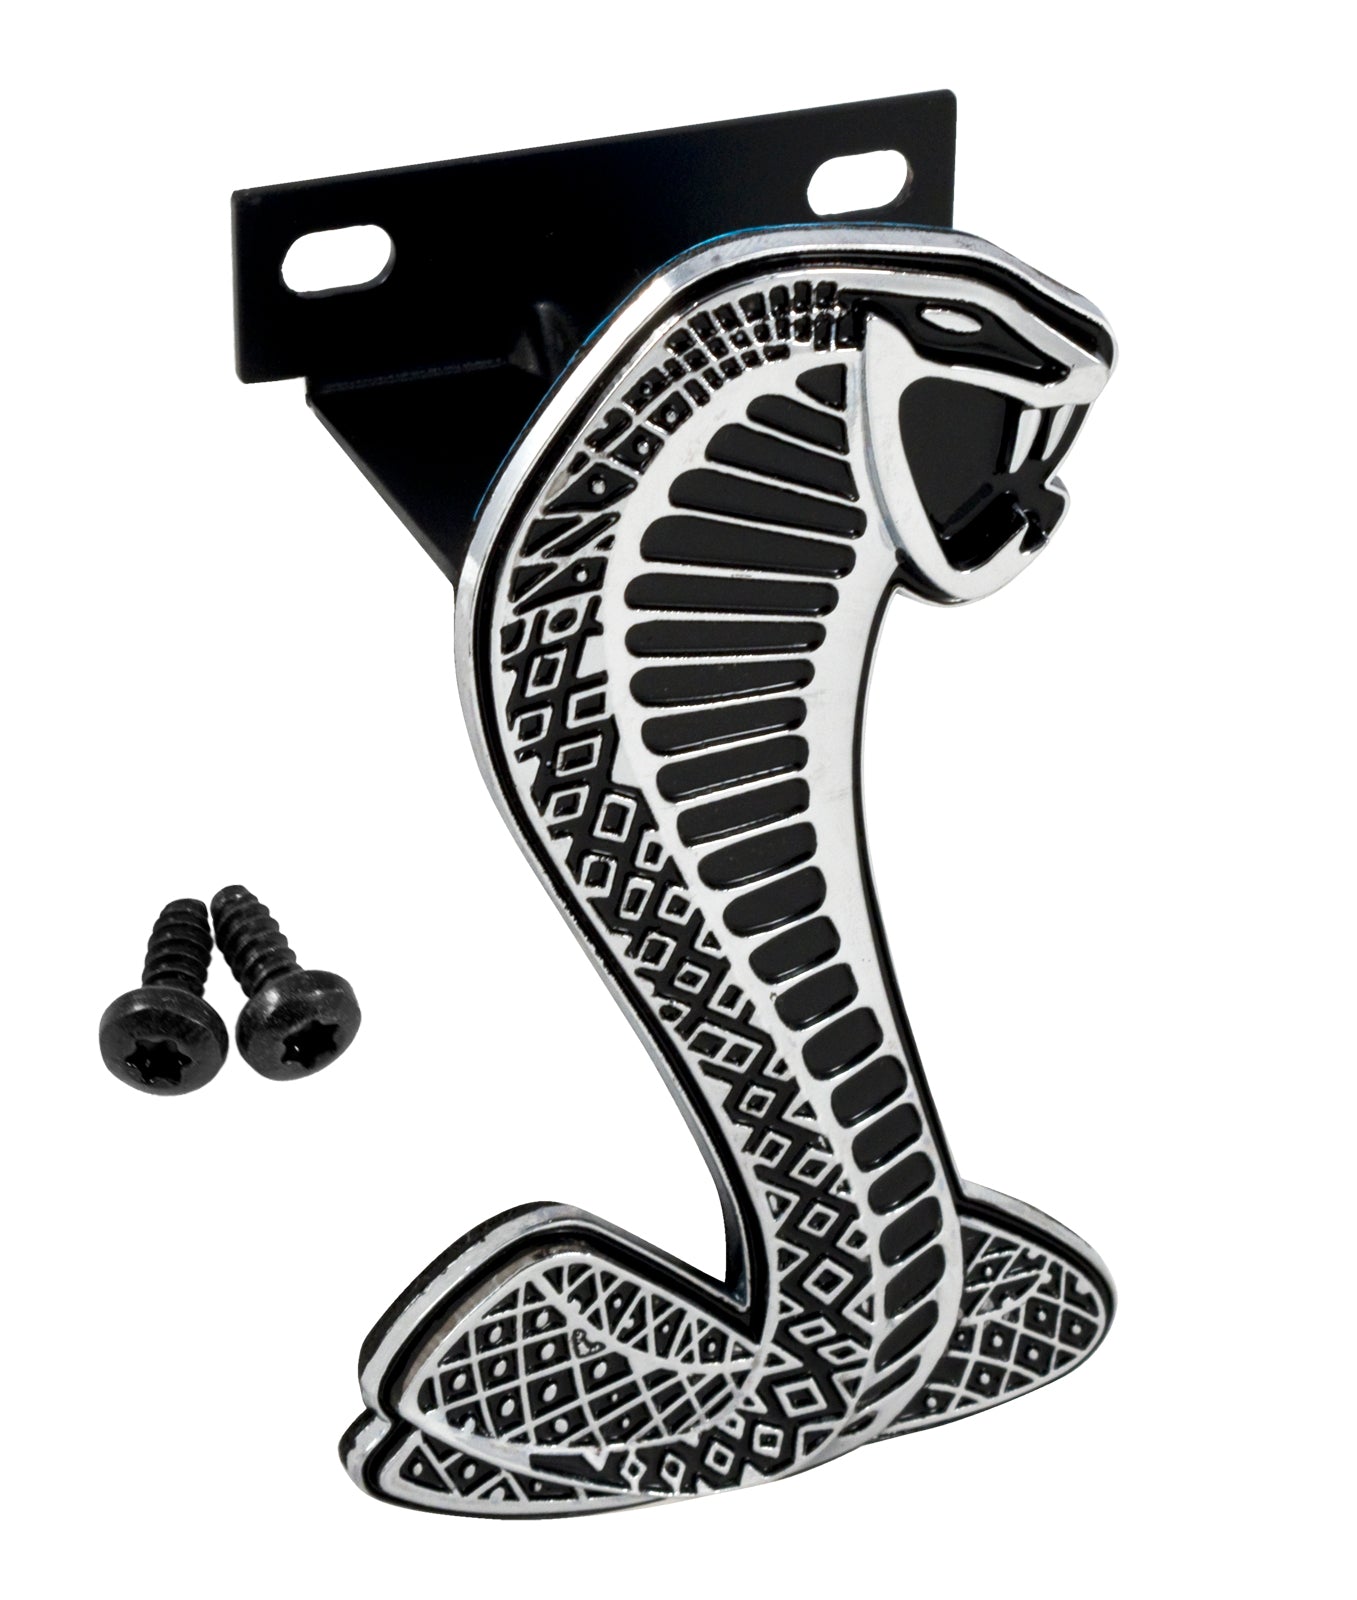 1999-2004 Mustang Cobra Front Bumper Grille 4" Snake Emblem w/ Bracket & Screws